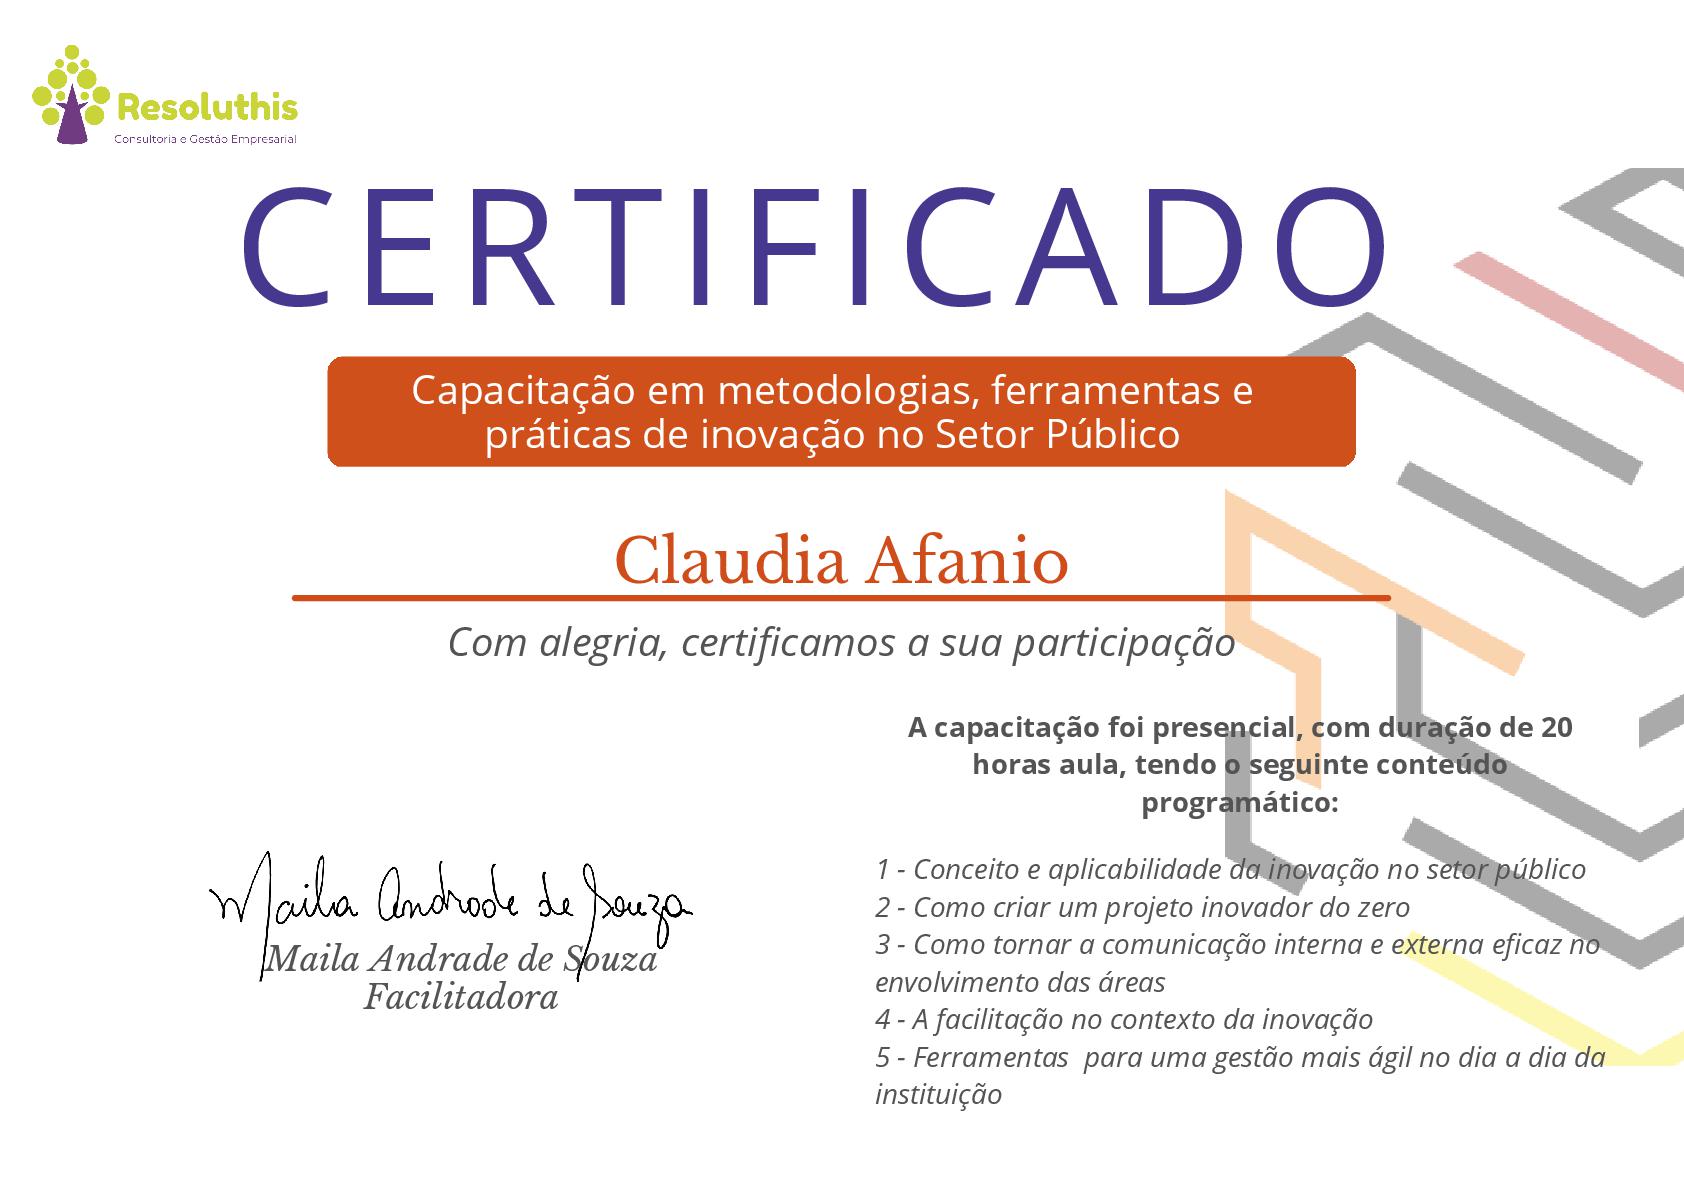 Imagem do Certificado de Claudia Afanio na Capacitação em metodologias, ferramentas e práticas de inovação no Setor Público.